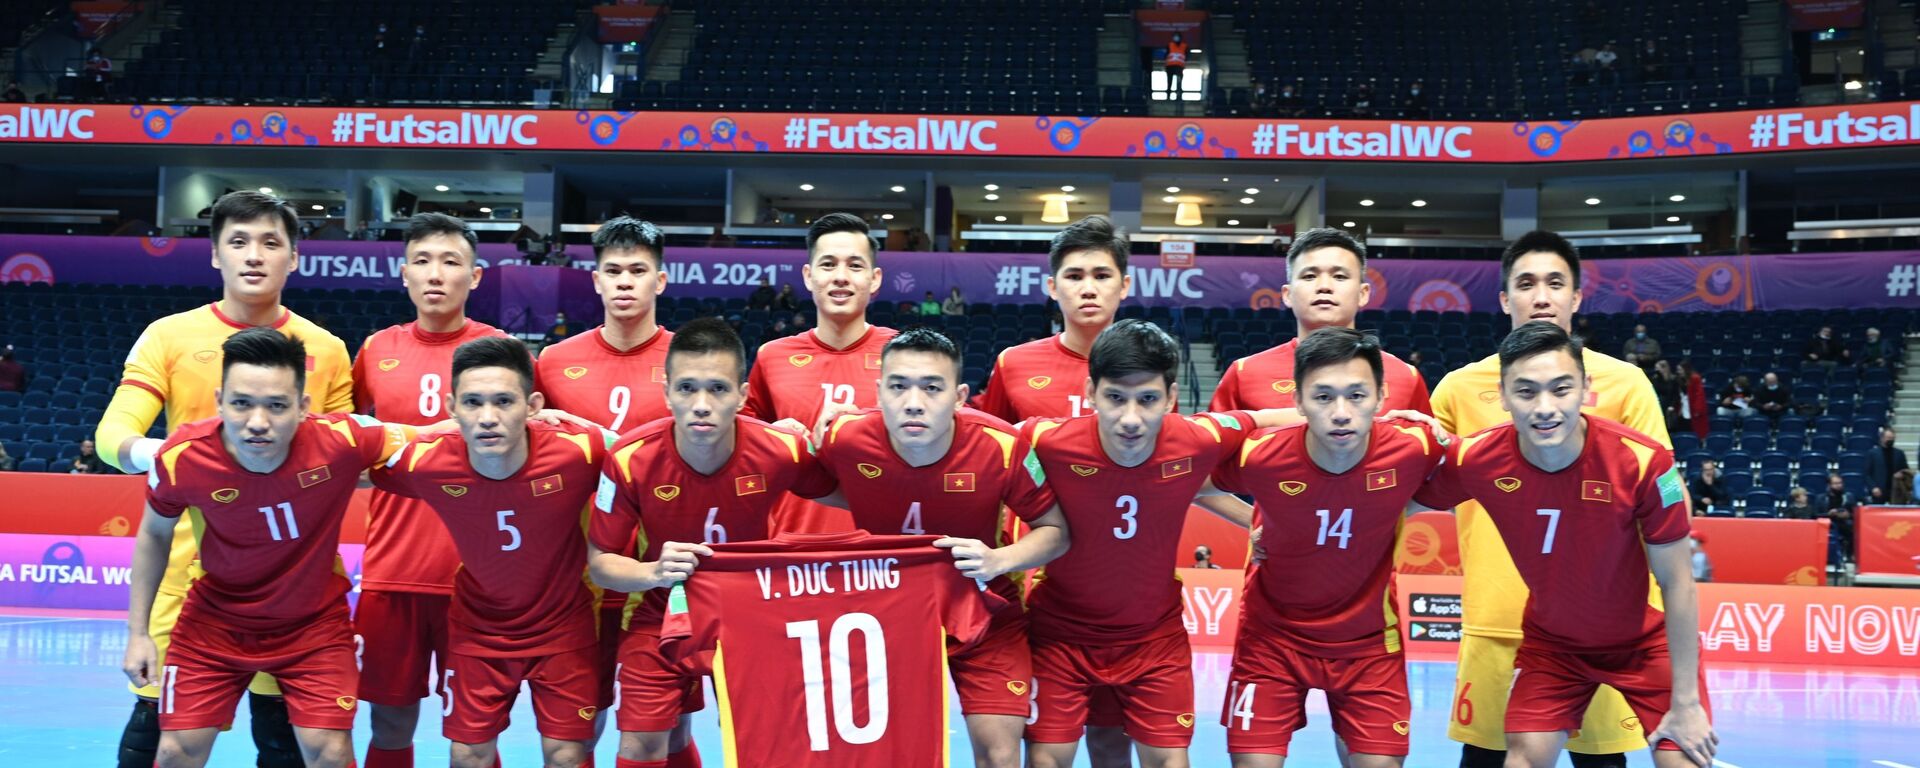 VCK Futsal World Cup 2021: Thua sát nút Á quân thế giới, tuyển Việt Nam chia tay World Cup futsal 2021 - Sputnik Việt Nam, 1920, 22.09.2021